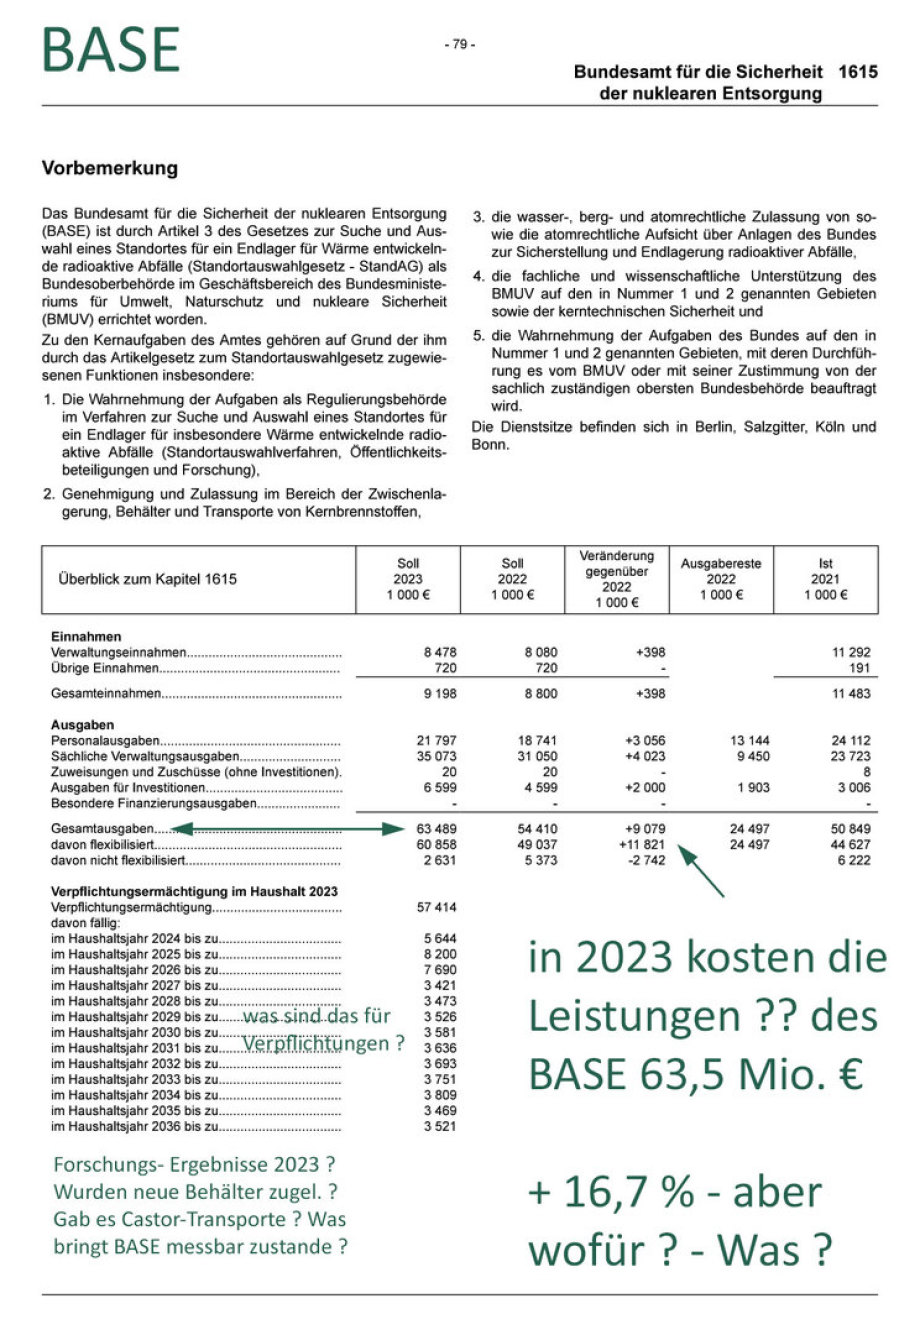 Kosten BASE Berlin 2023 - WAS ? - WOFÜR ?